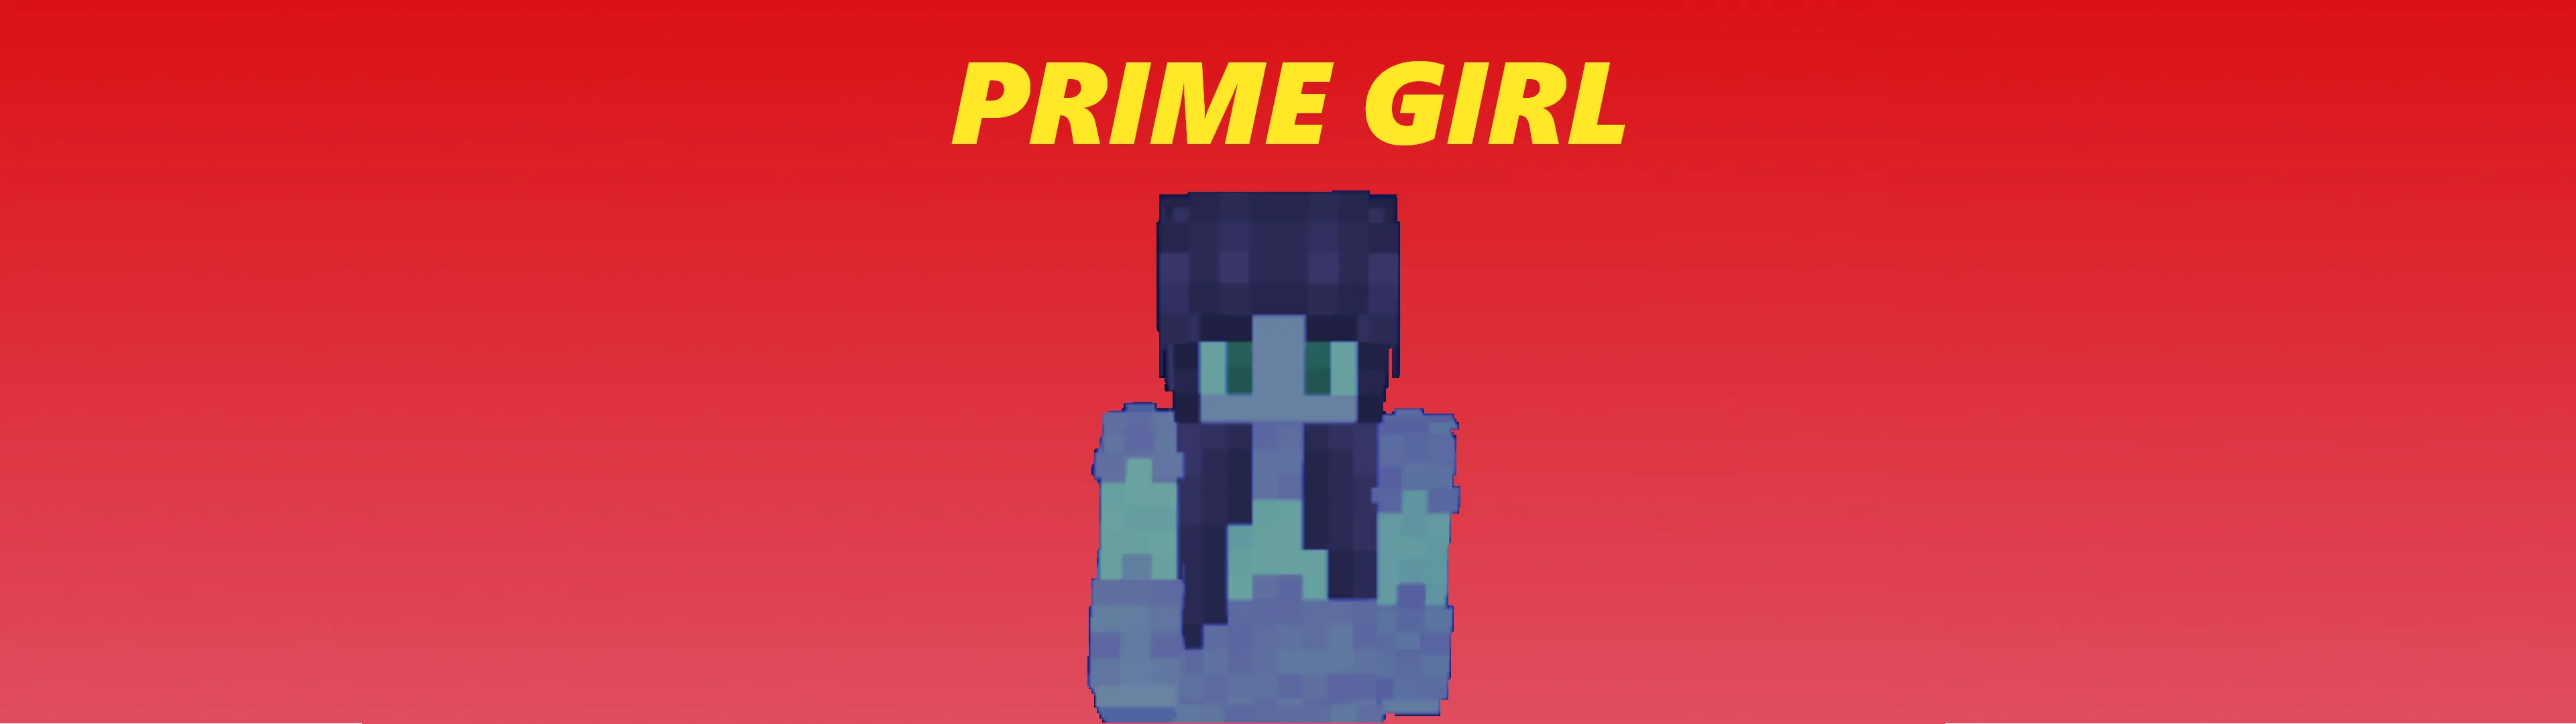 Prime Girl